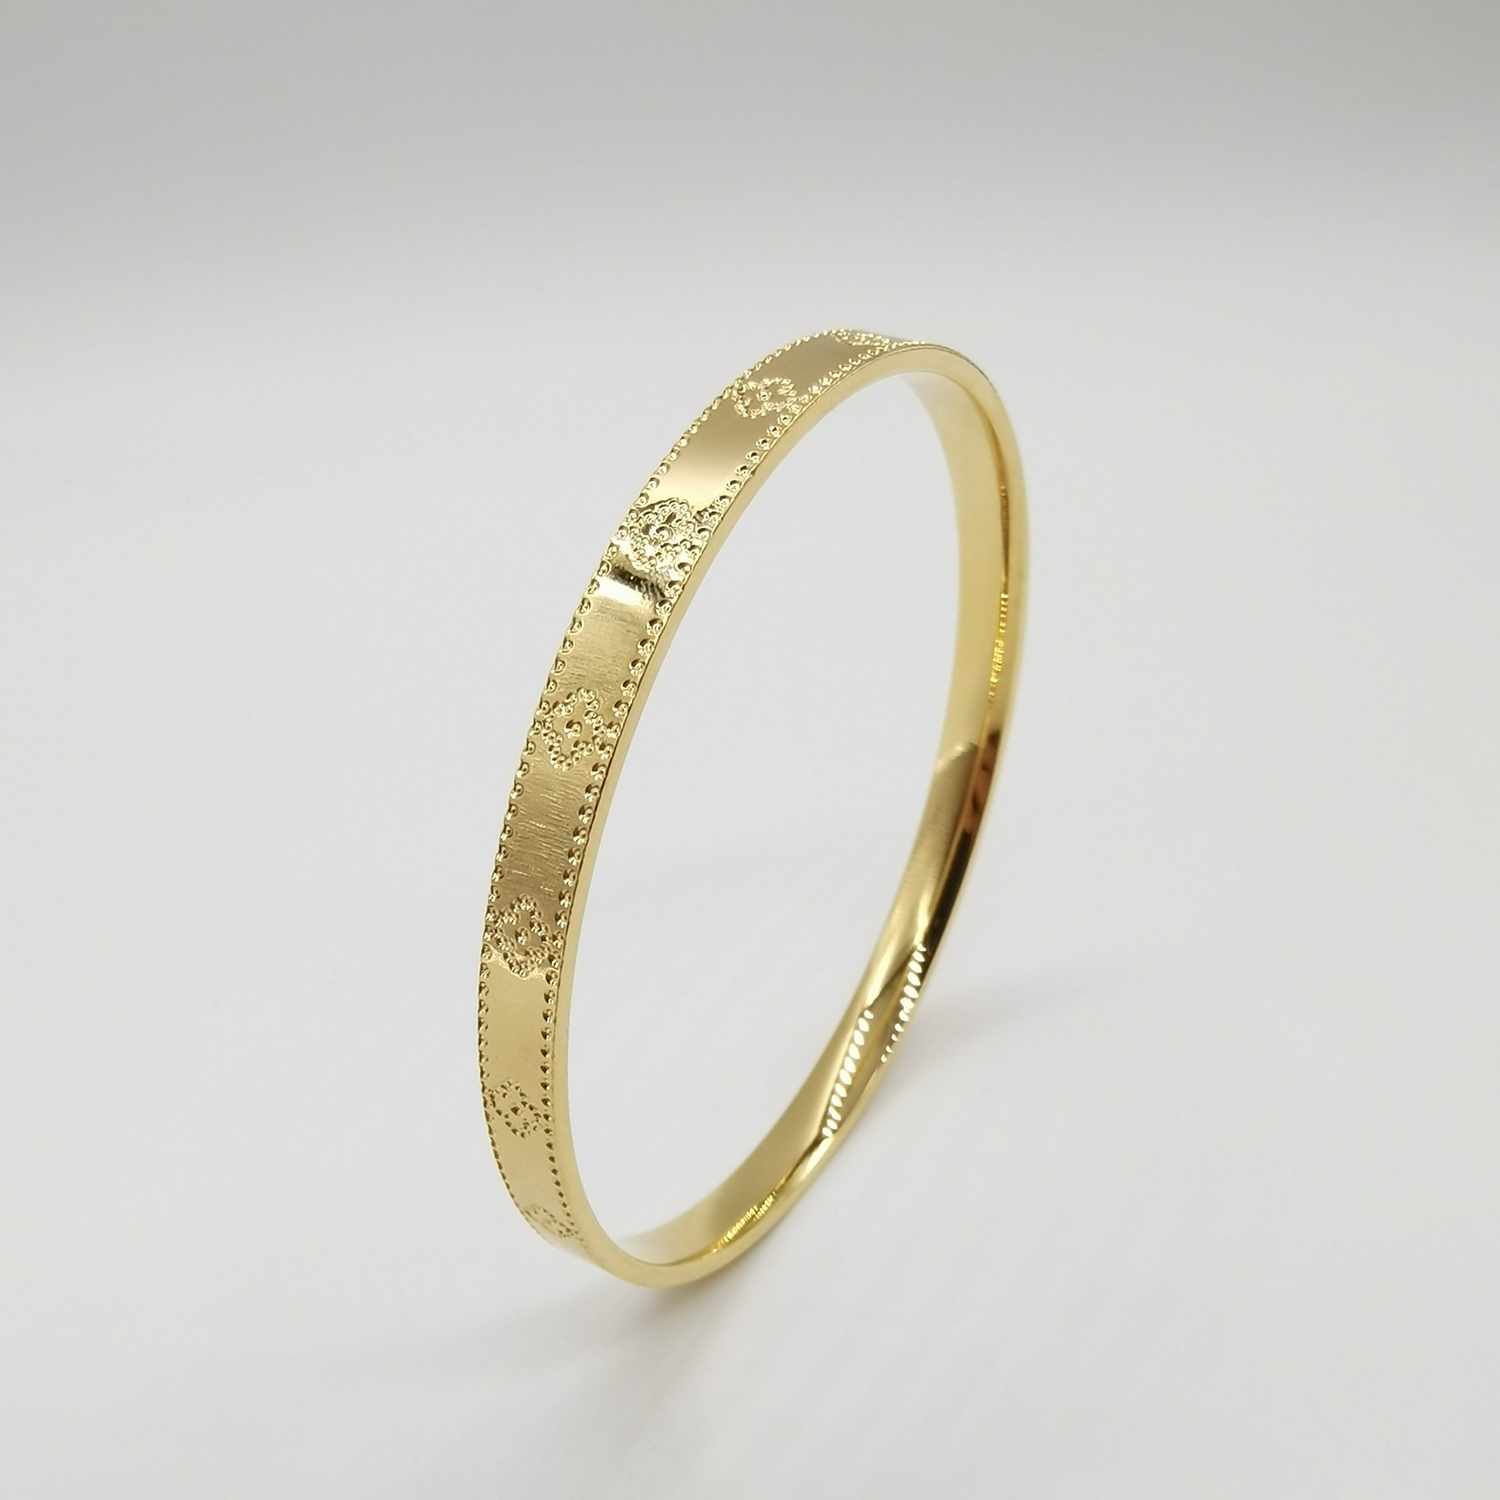 Alluvial gold vacuum electroplating 24K gold four-leaf clover bracelet